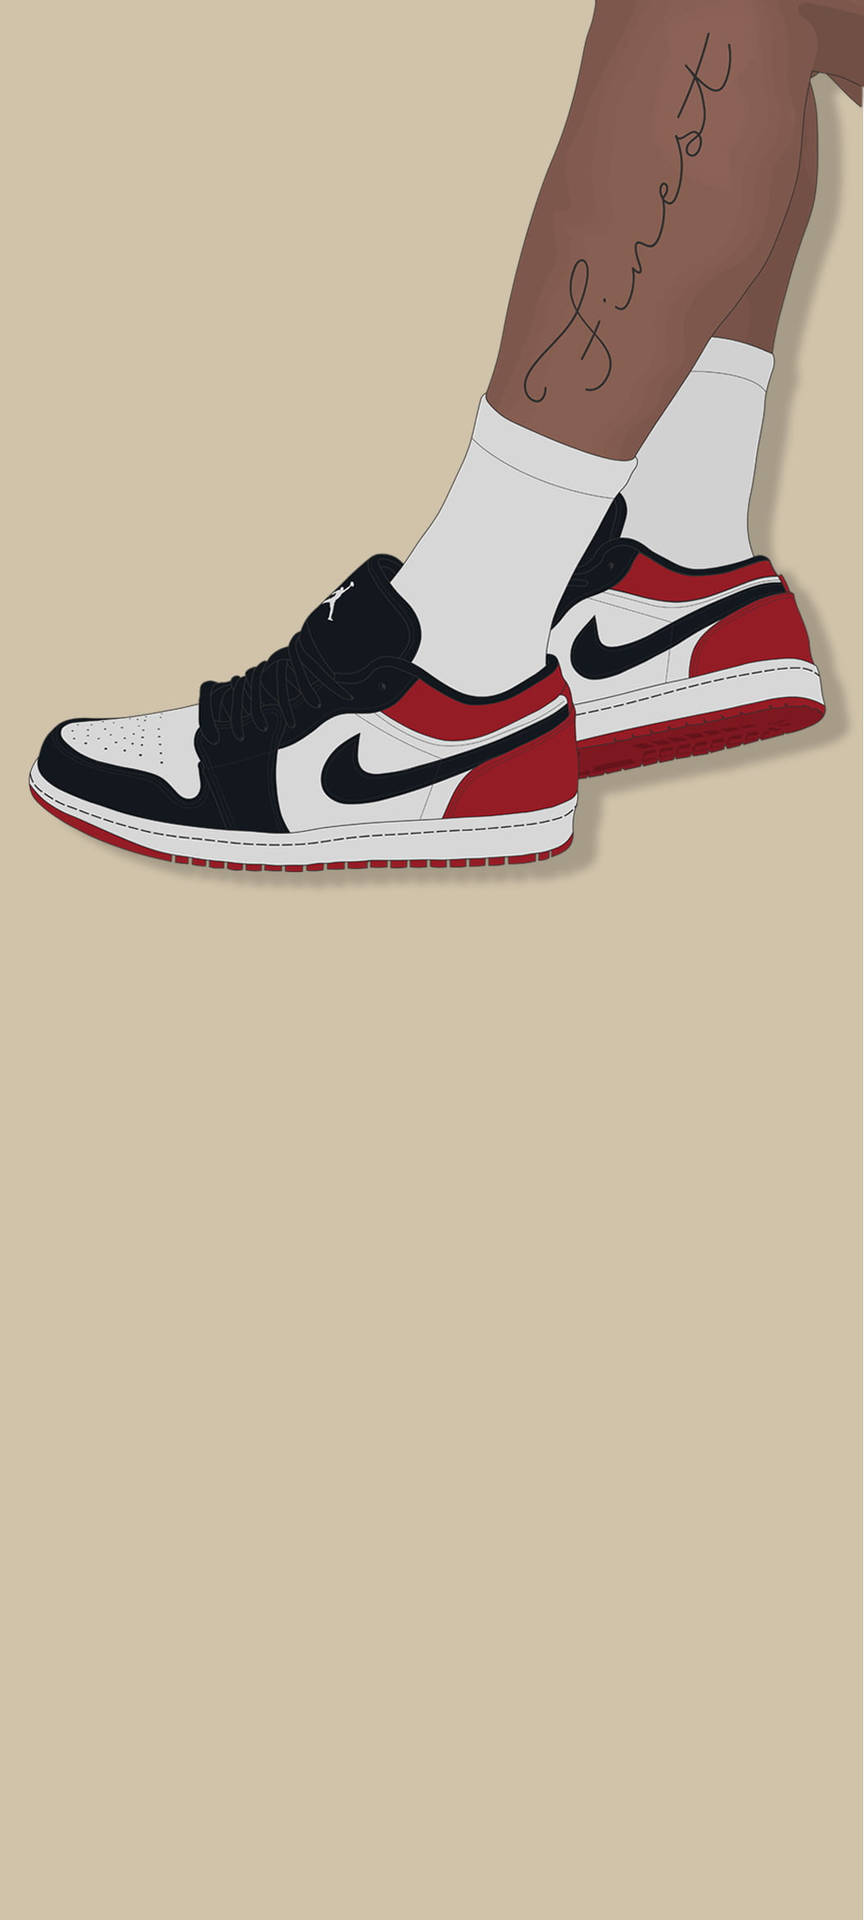 Low-cut Cartoon Nike Shoes Wallpaper